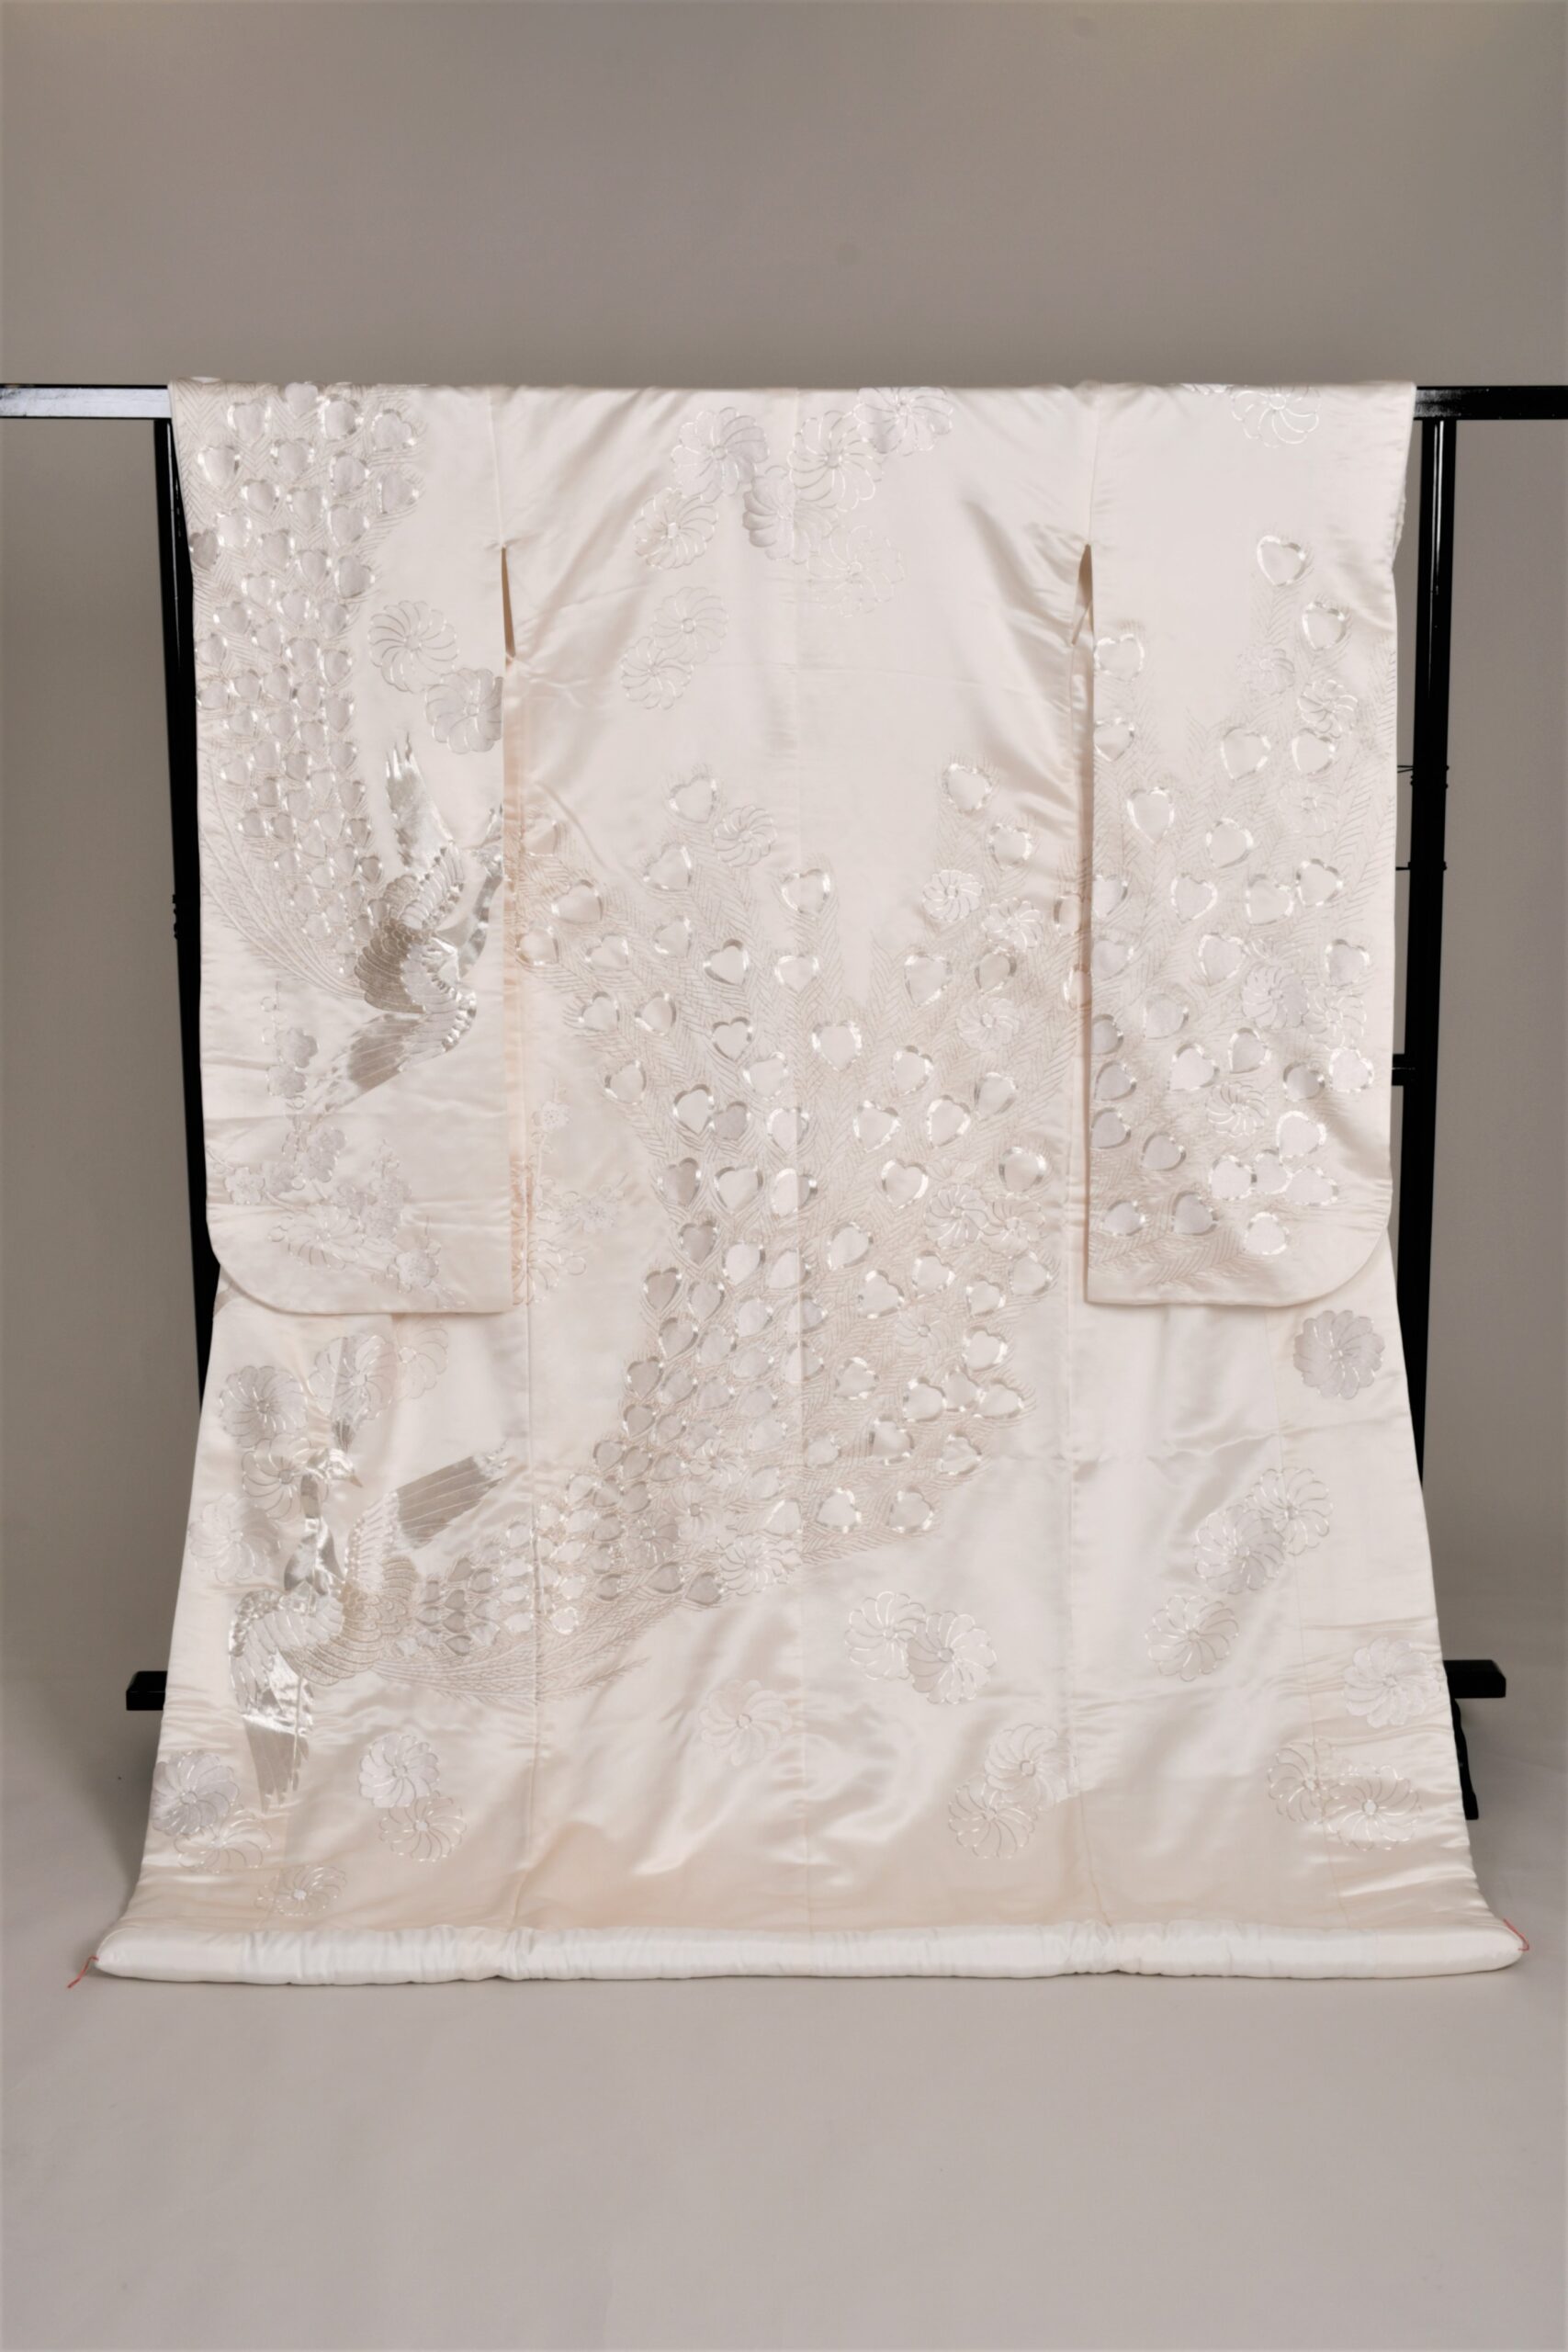 THE TREAT DRESSINGがおすすめする正絹の白無垢。